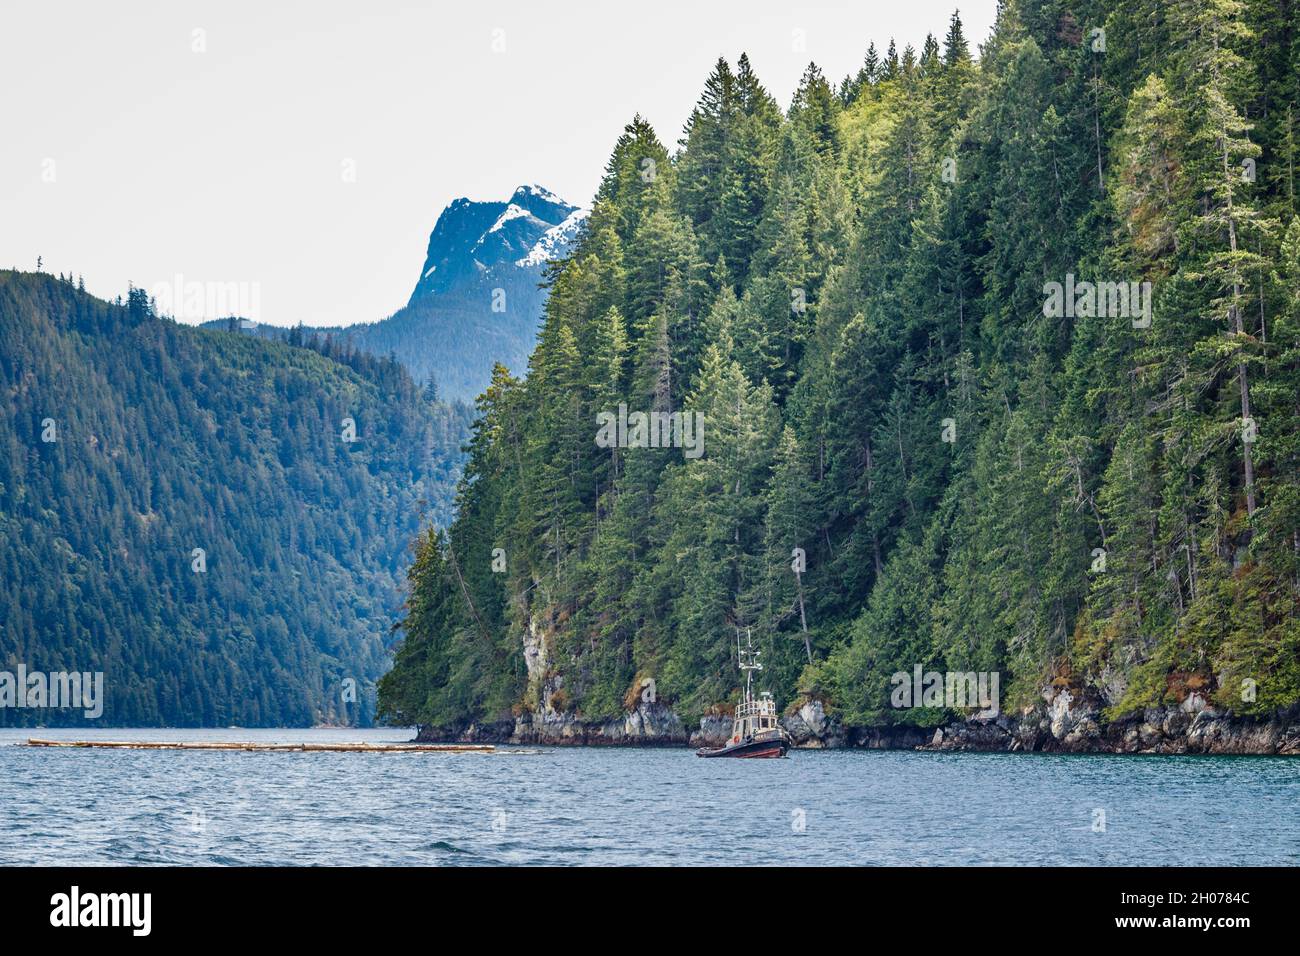 Un rimorchiatore stoppa un braccio di tronchi lungo una costa boschiva in uno stretto passaggio costiero, con una ripida vetta innevata sullo sfondo (British Columbia). Foto Stock